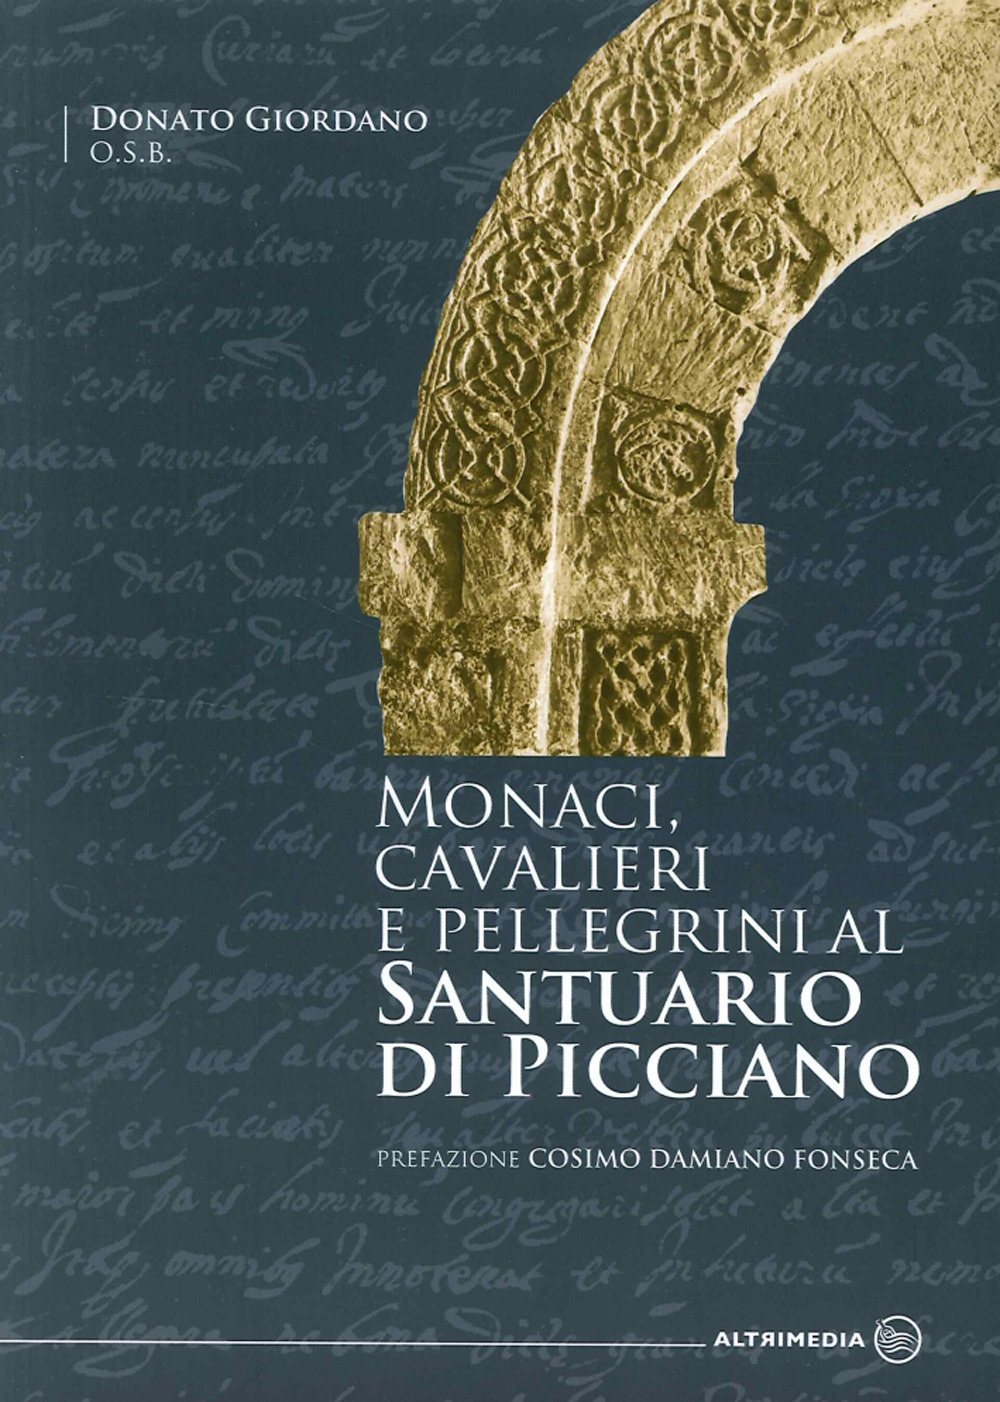 Monaci, cavalieri e pellegrini al santuario di Picciano